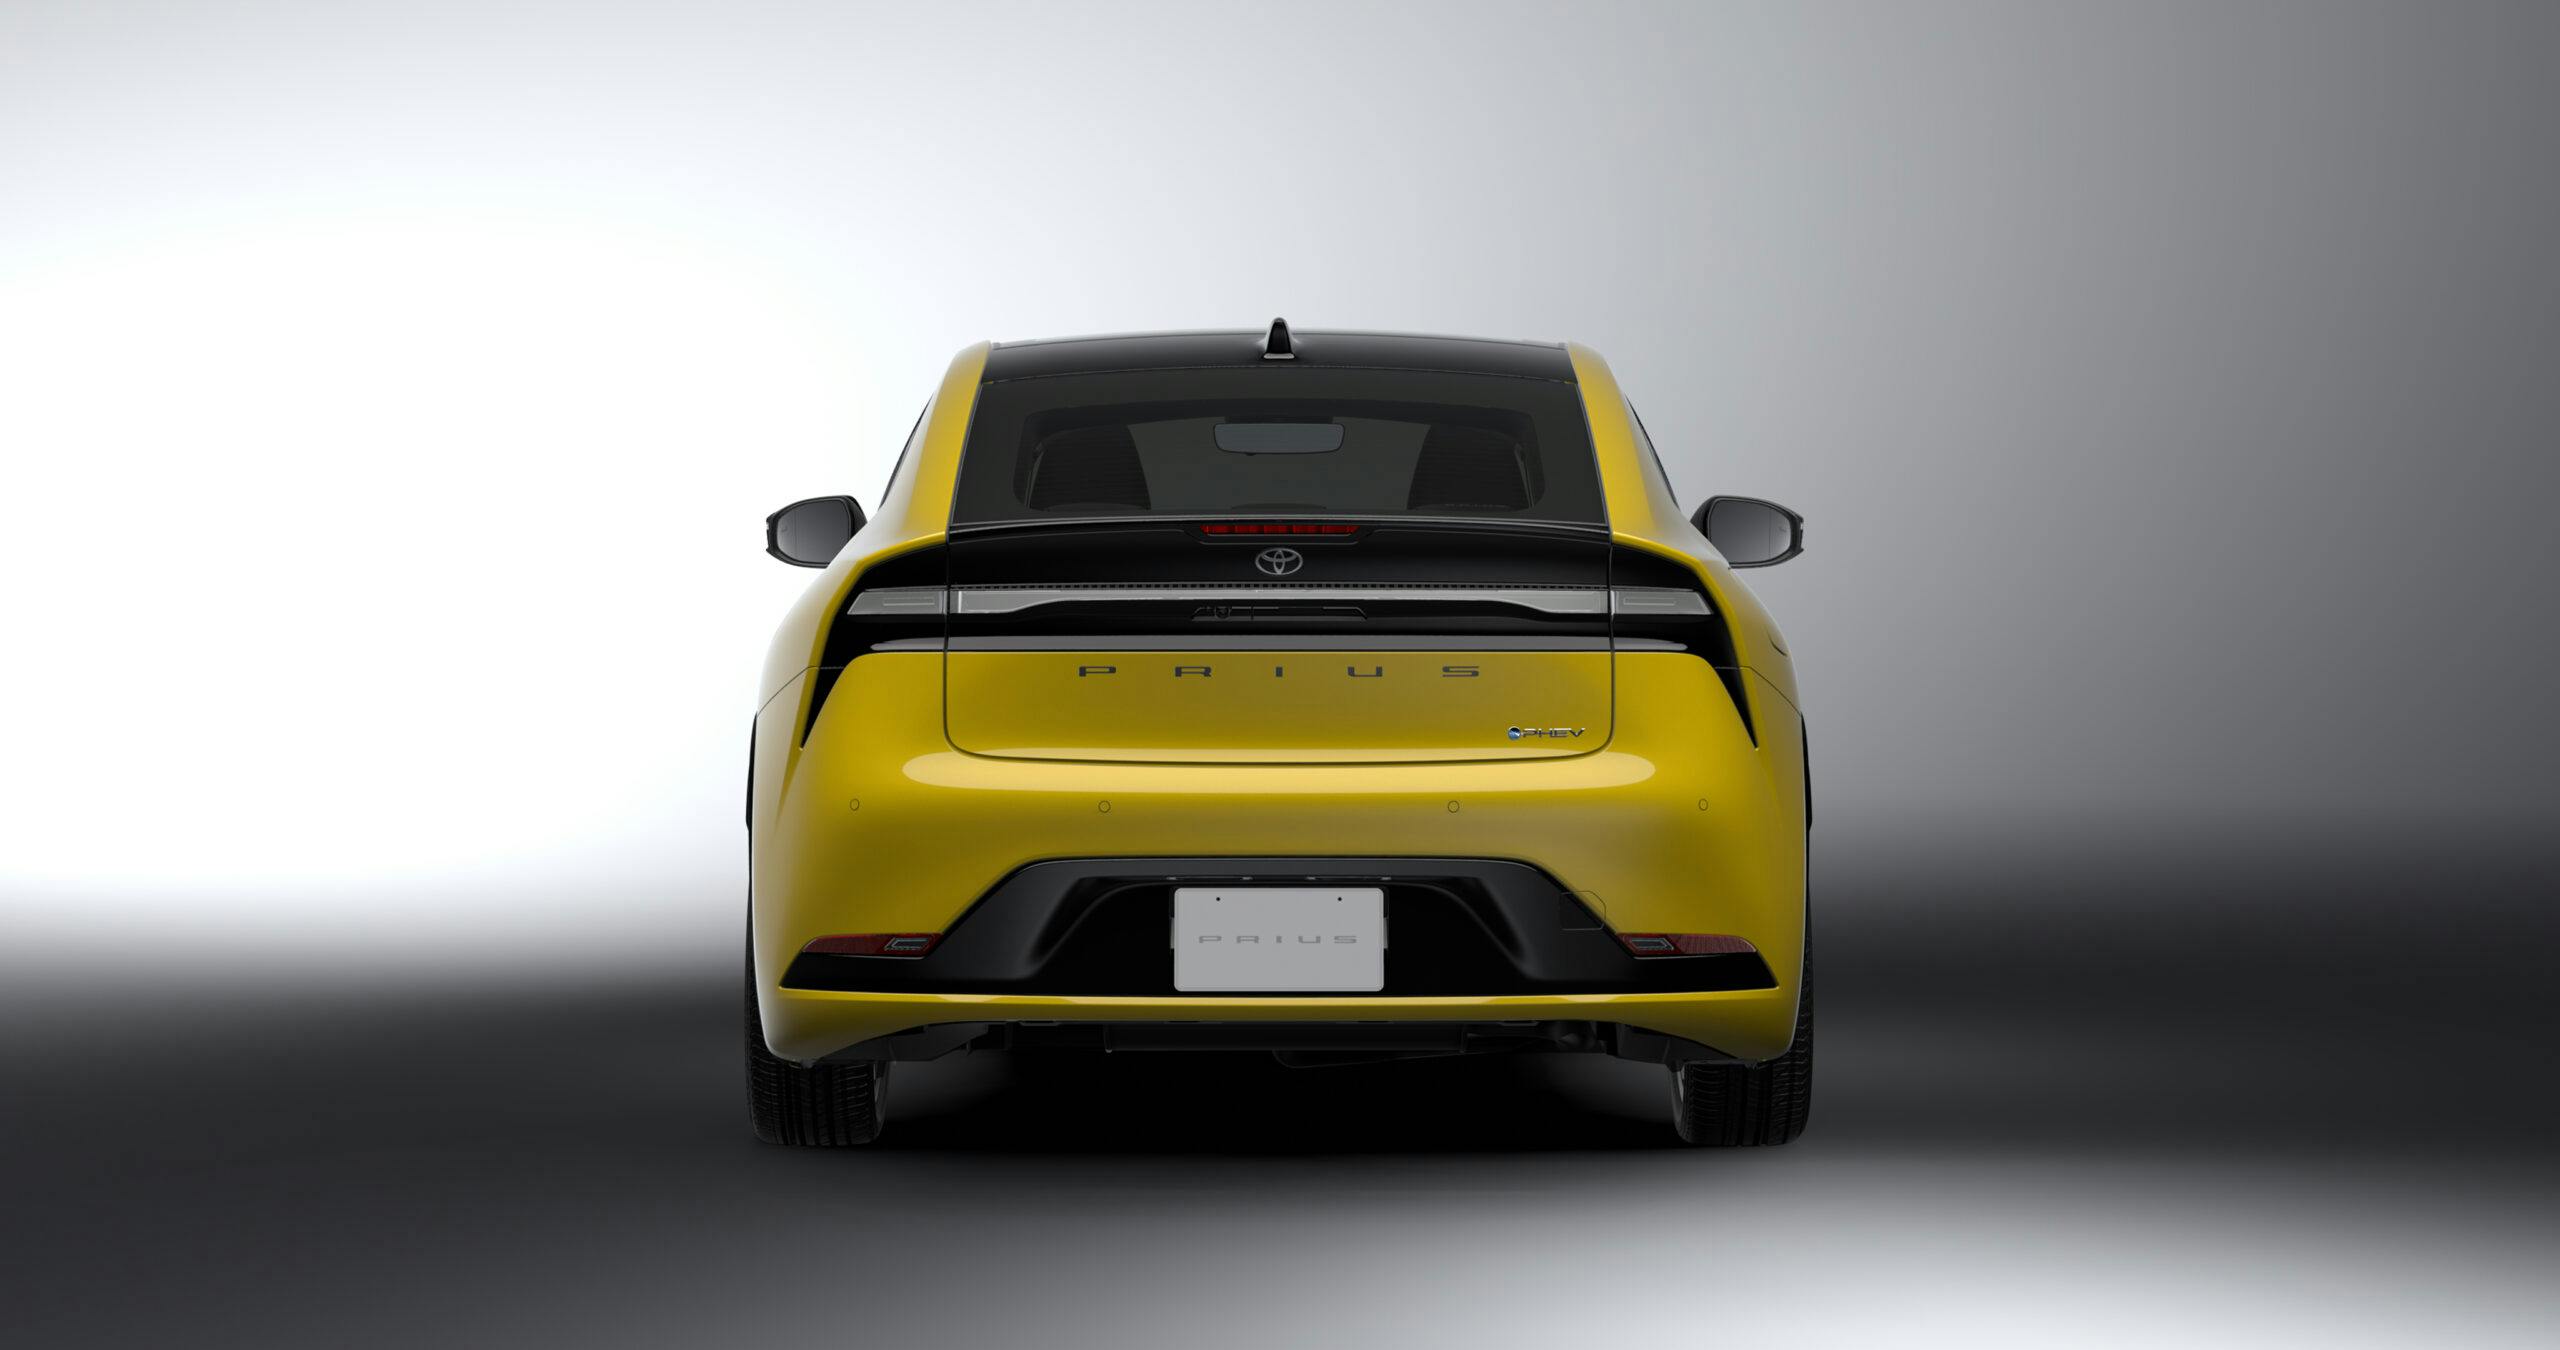 New Prius Prototype yellow rear